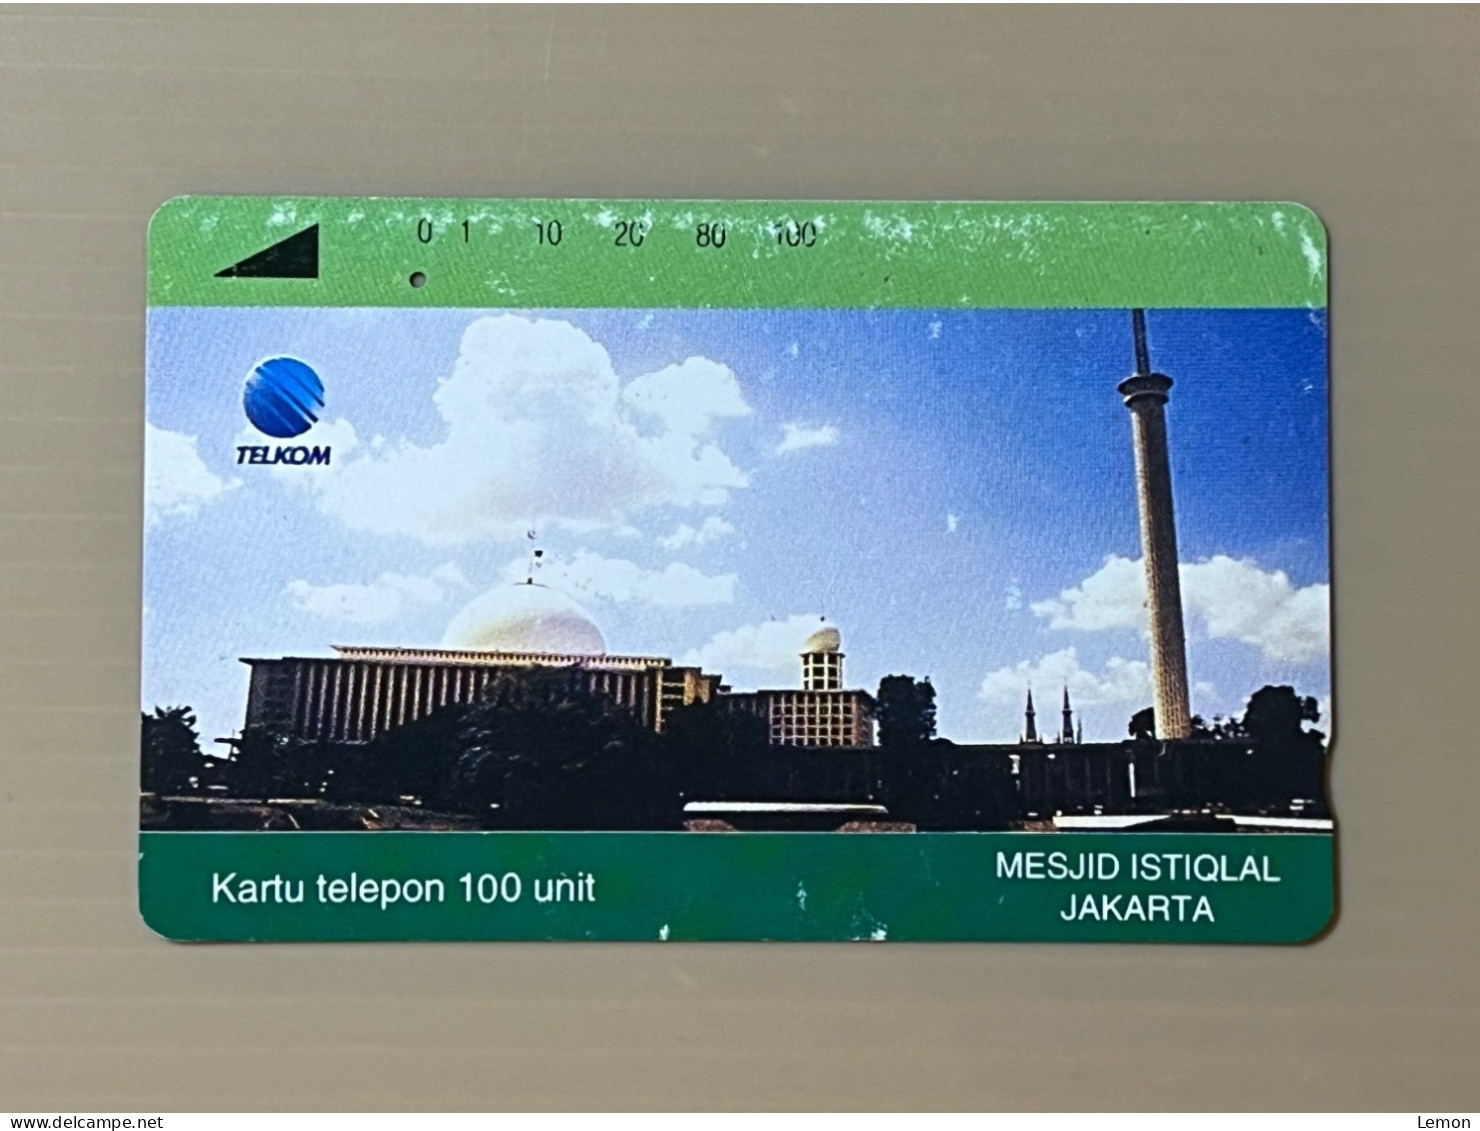 Indonesia Phonecard, 1 Used Card - Indonesië